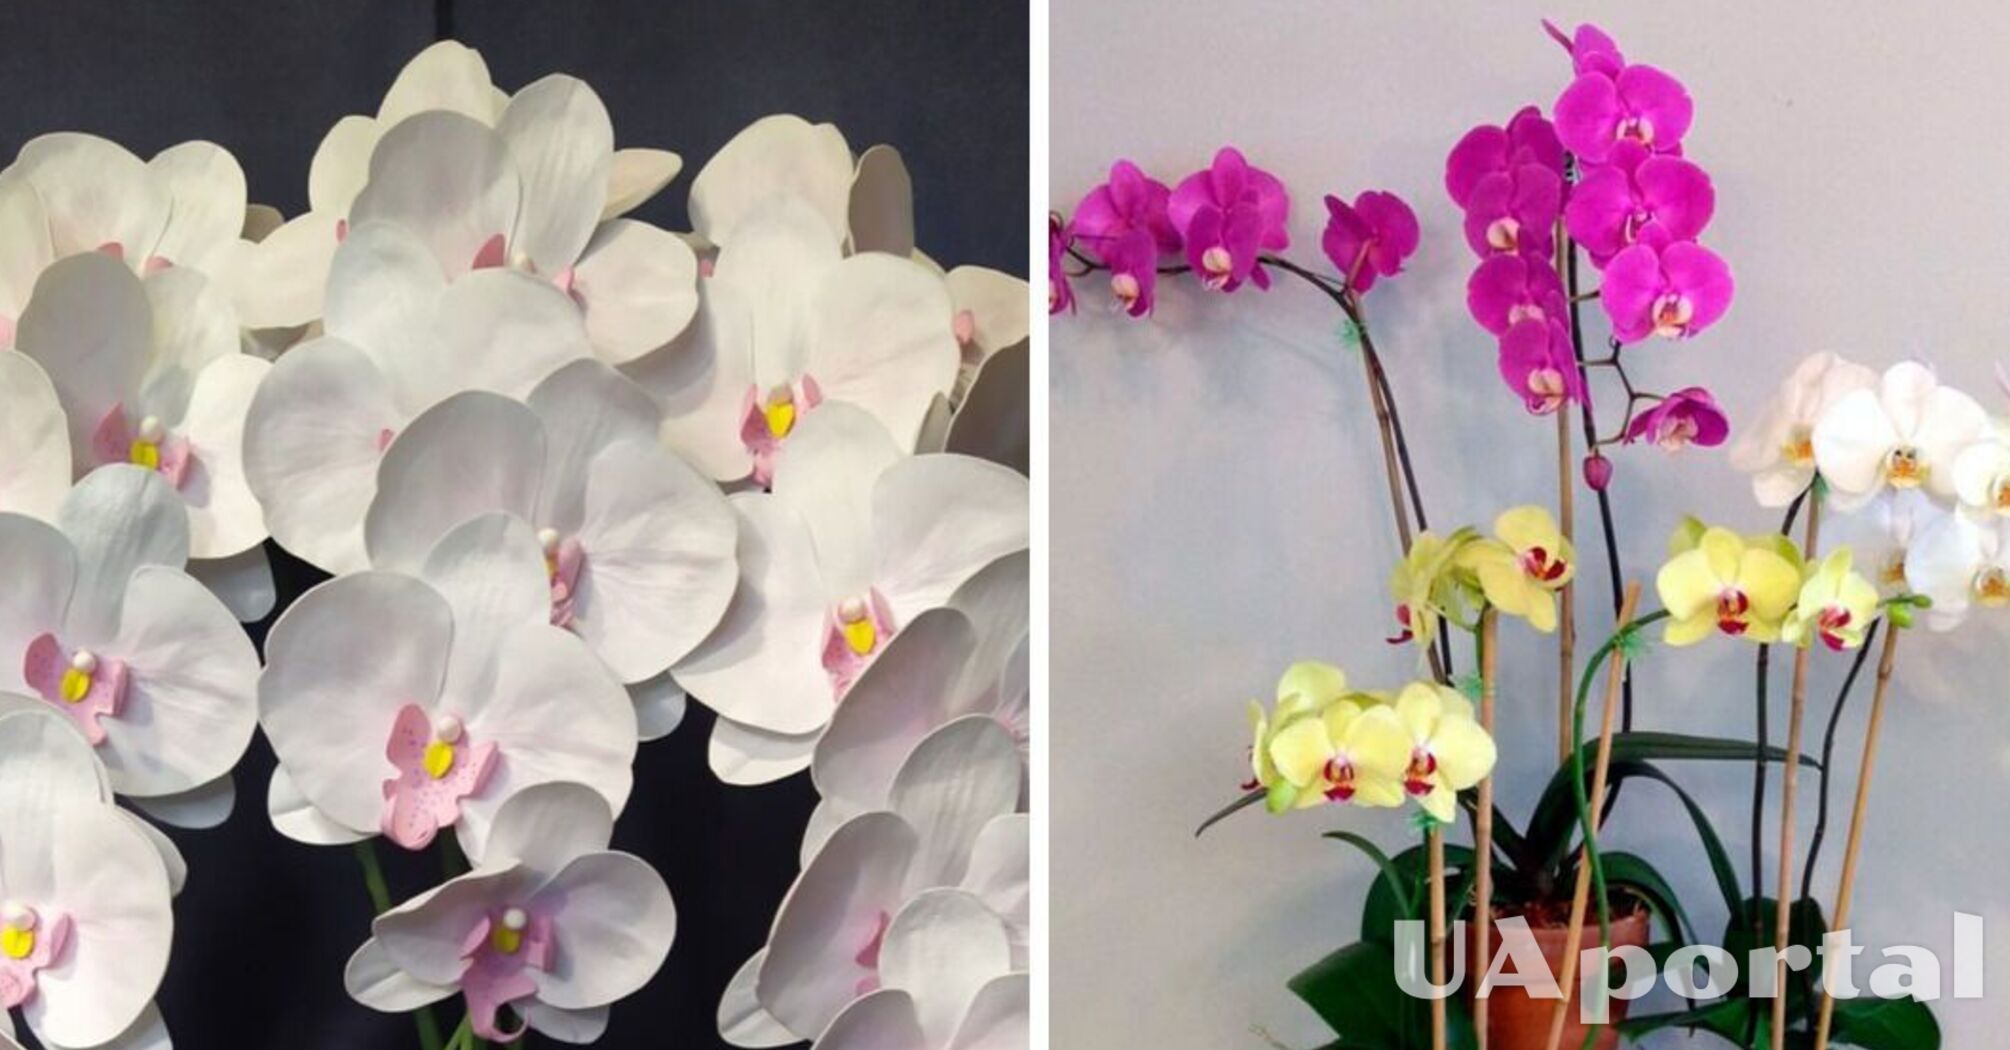 Трюк із заморозкою може змусити орхідею квітнути: що радять садівники